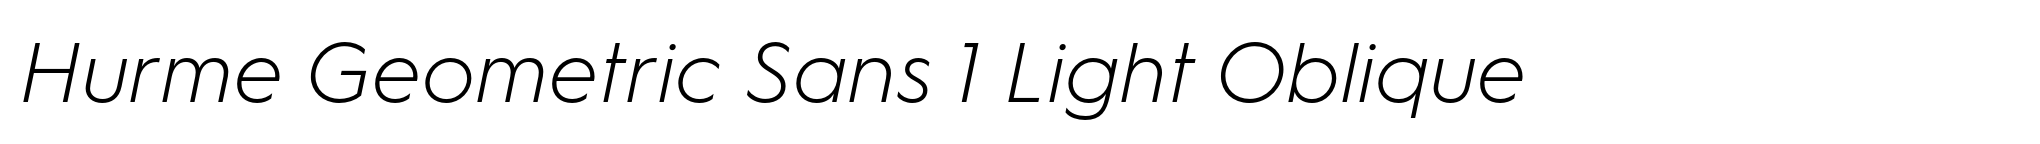 Hurme Geometric Sans 1 Light Oblique image